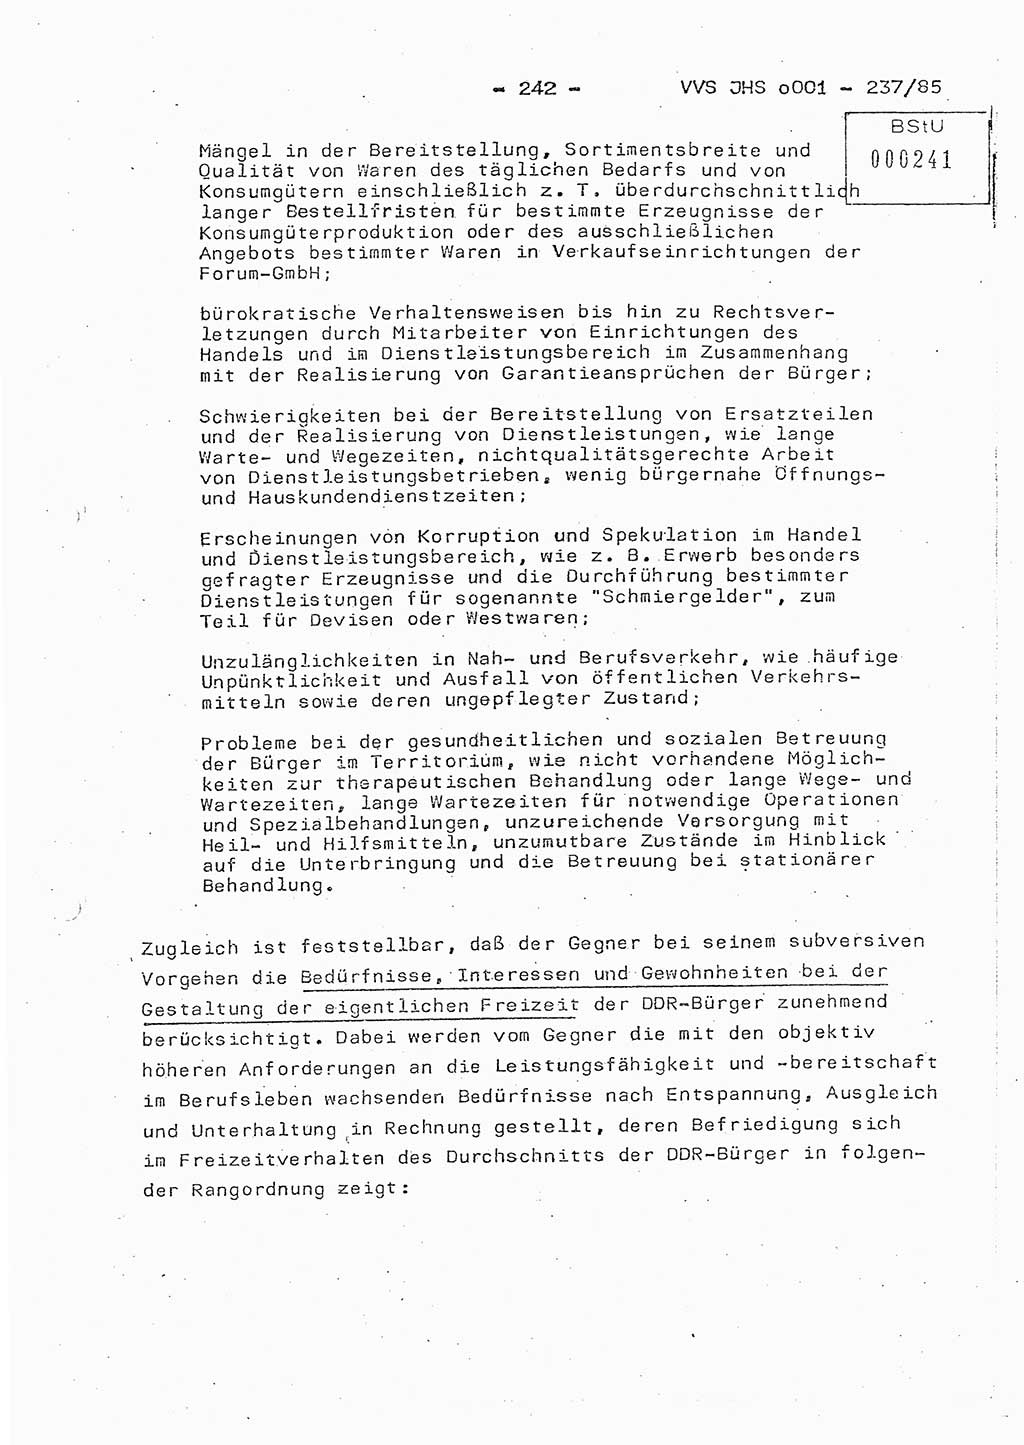 Dissertation Oberstleutnant Peter Jakulski (JHS), Oberstleutnat Christian Rudolph (HA Ⅸ), Major Horst Böttger (ZMD), Major Wolfgang Grüneberg (JHS), Major Albert Meutsch (JHS), Ministerium für Staatssicherheit (MfS) [Deutsche Demokratische Republik (DDR)], Juristische Hochschule (JHS), Vertrauliche Verschlußsache (VVS) o001-237/85, Potsdam 1985, Seite 242 (Diss. MfS DDR JHS VVS o001-237/85 1985, S. 242)